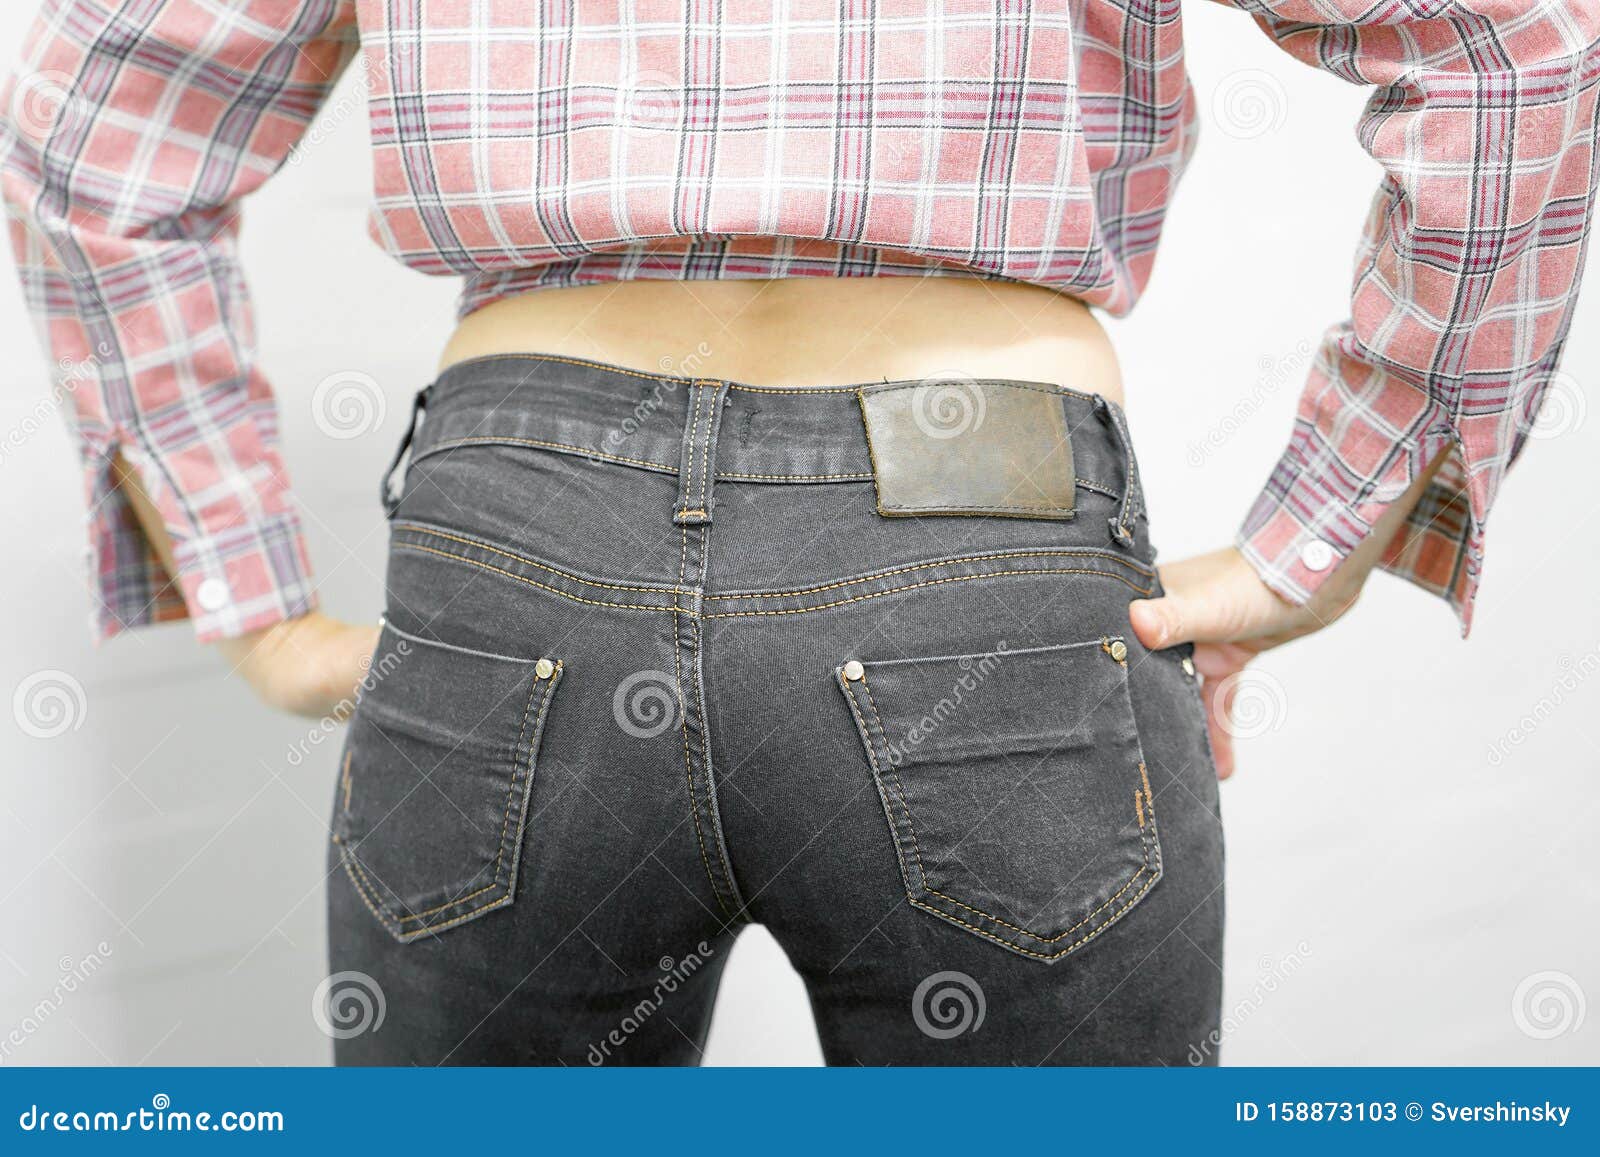 Arsch bilder jeans Geile Frau